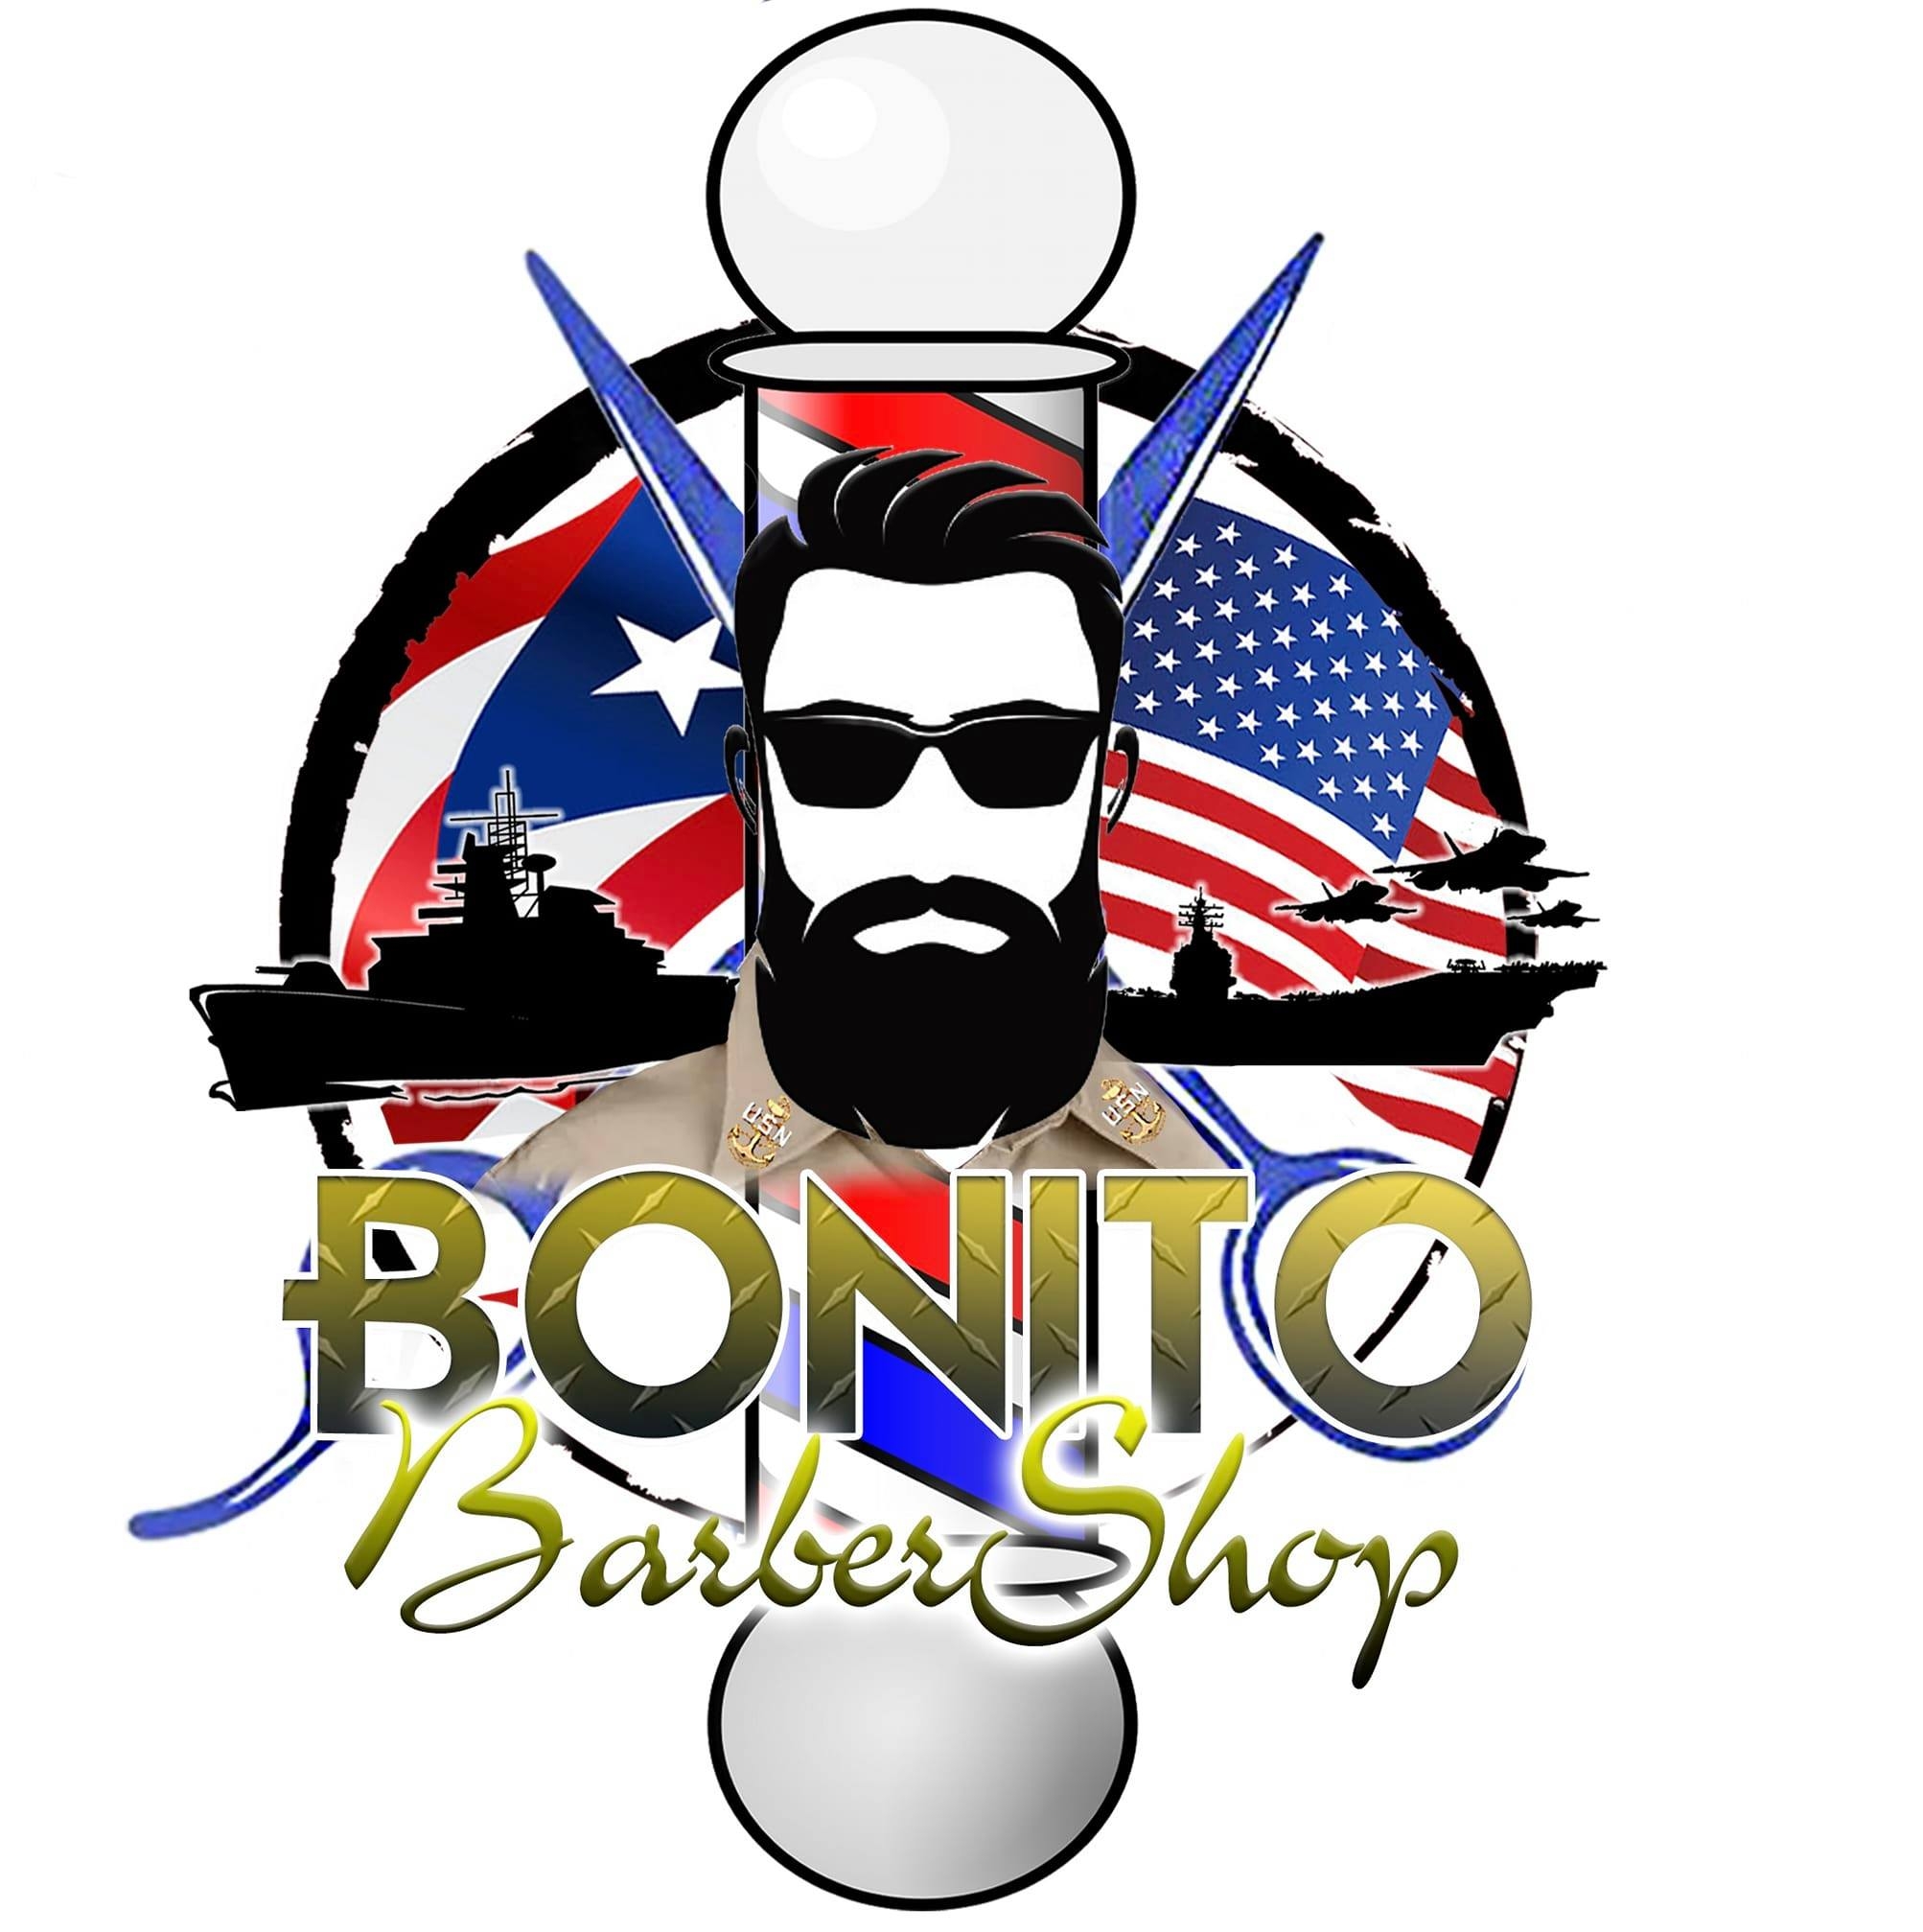 Bonito Barbershop logo